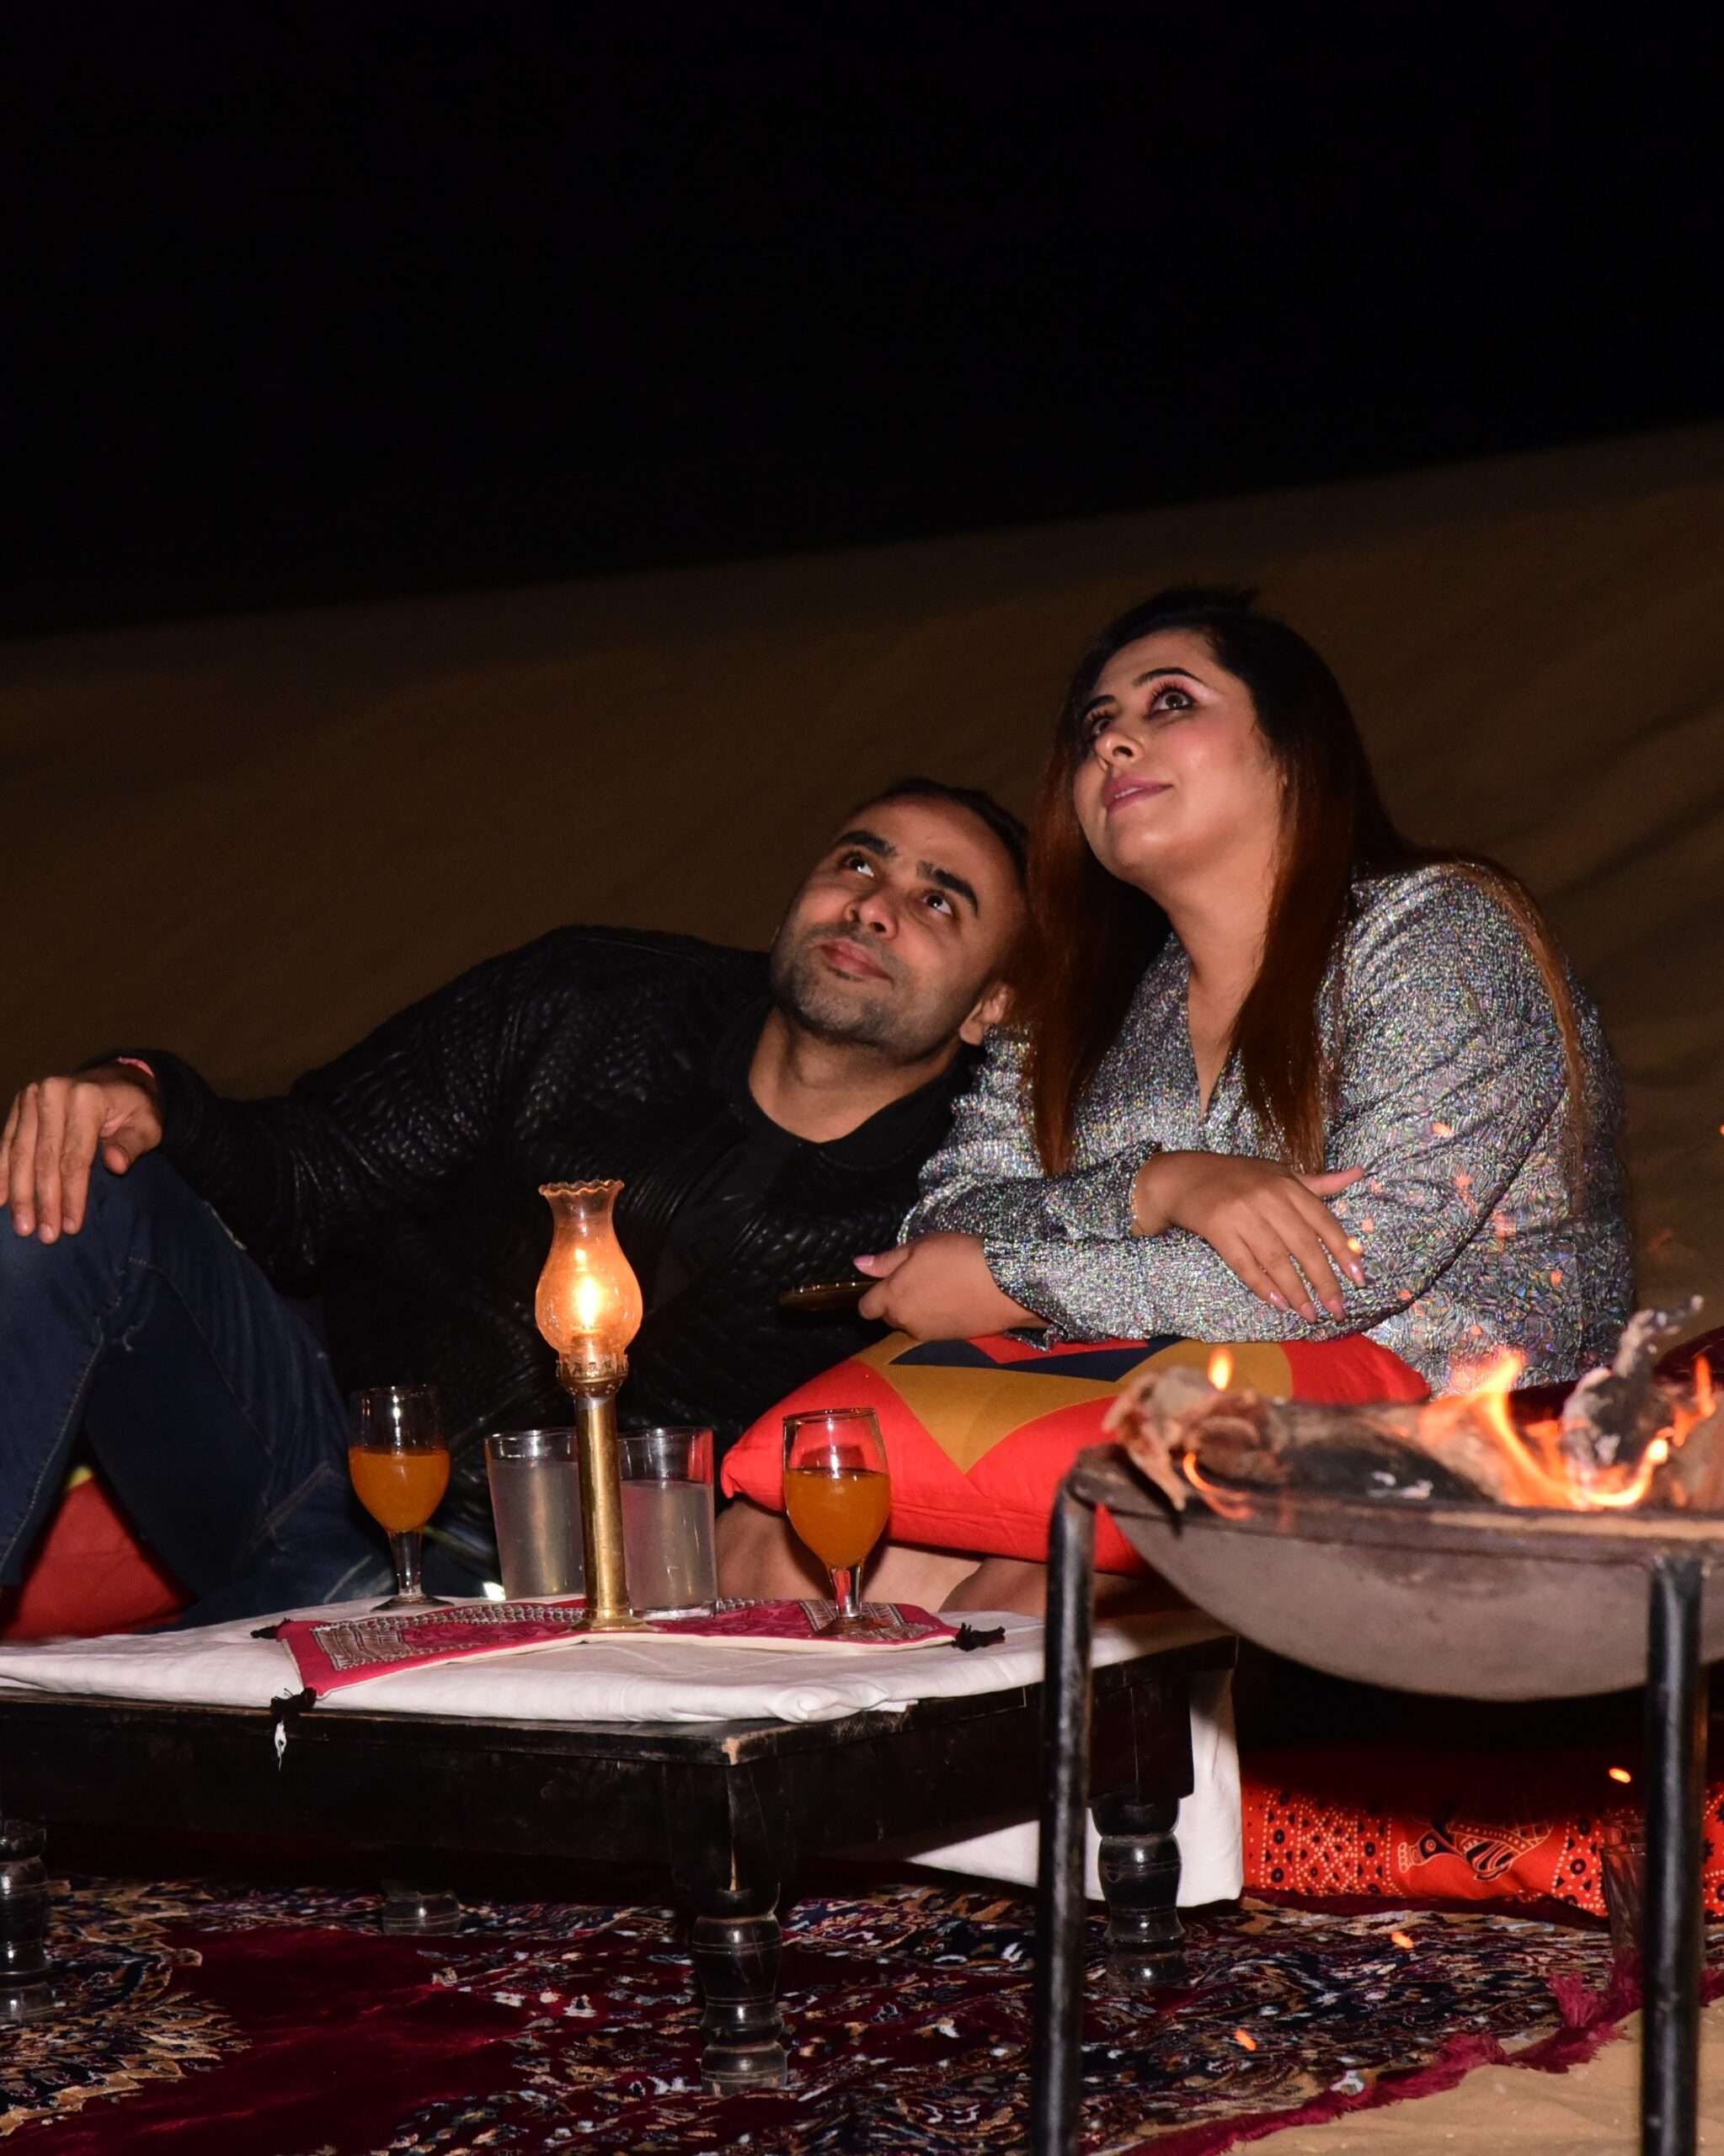 beautiful couple enjoying the millions of start in the heart of thar desert